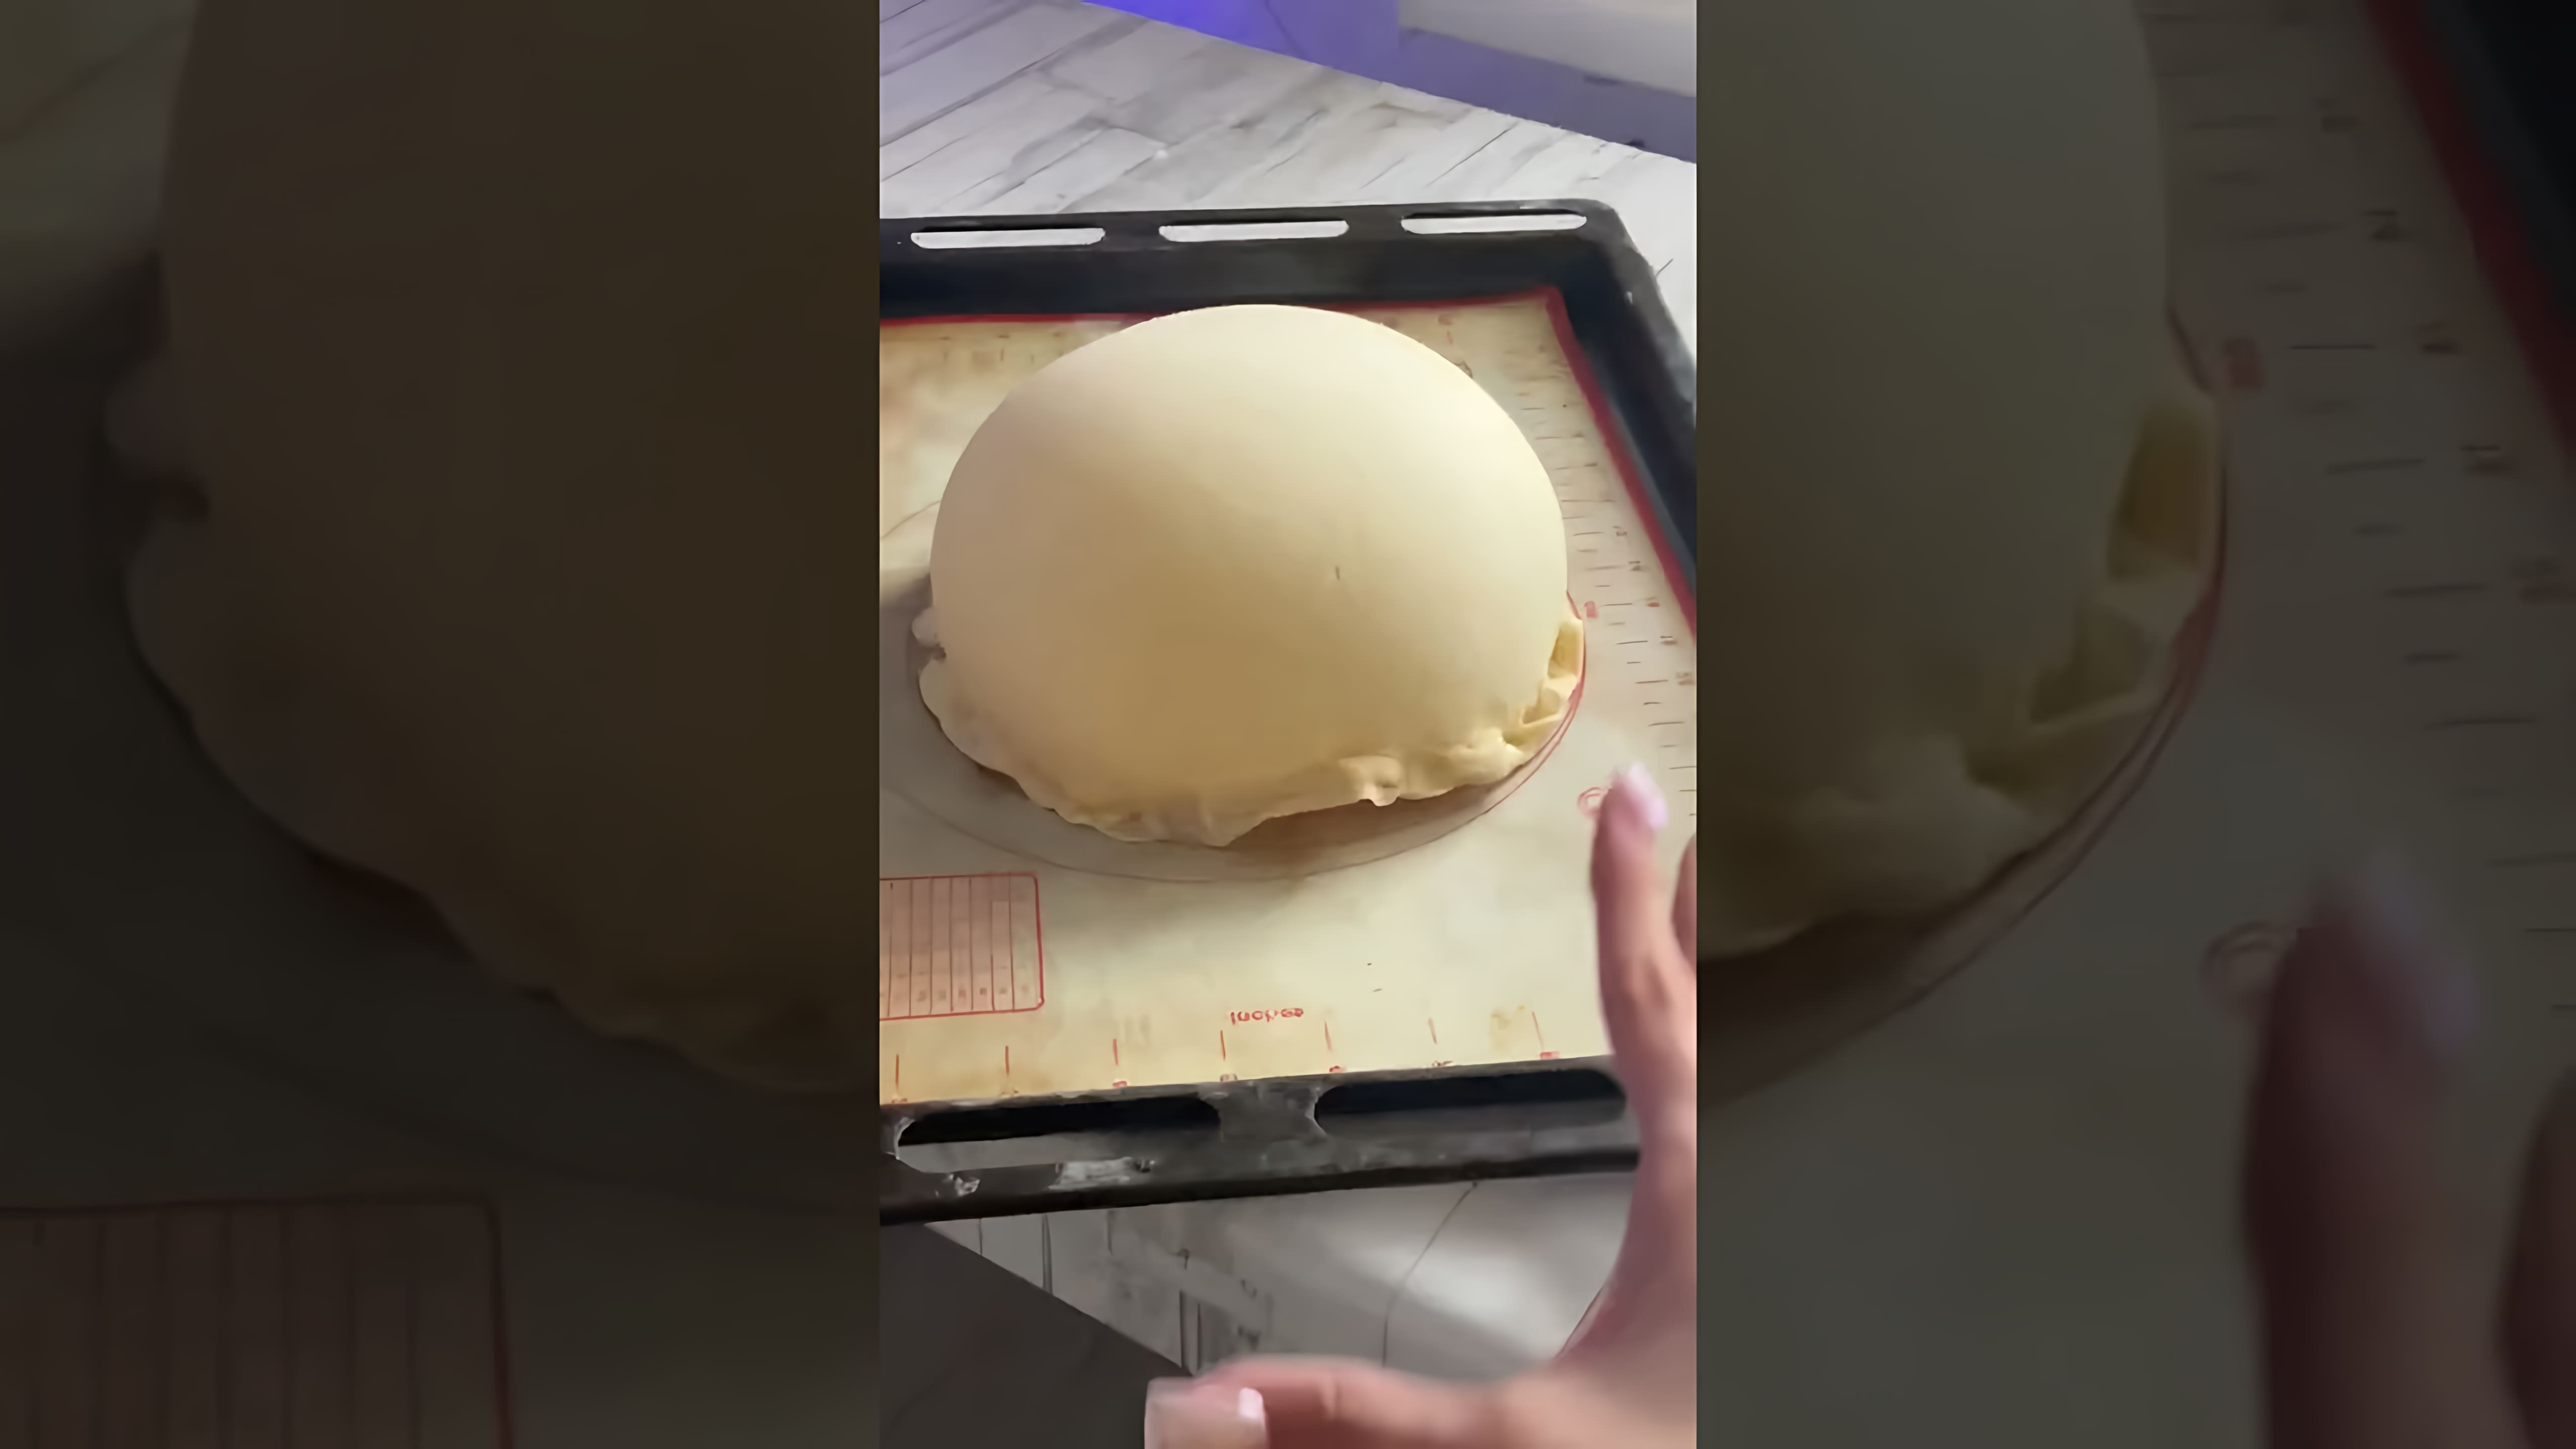 В этом видеоролике вы увидите, как девушка просто взяла и надула тесто, что вызвало удивление и восхищение у зрителей